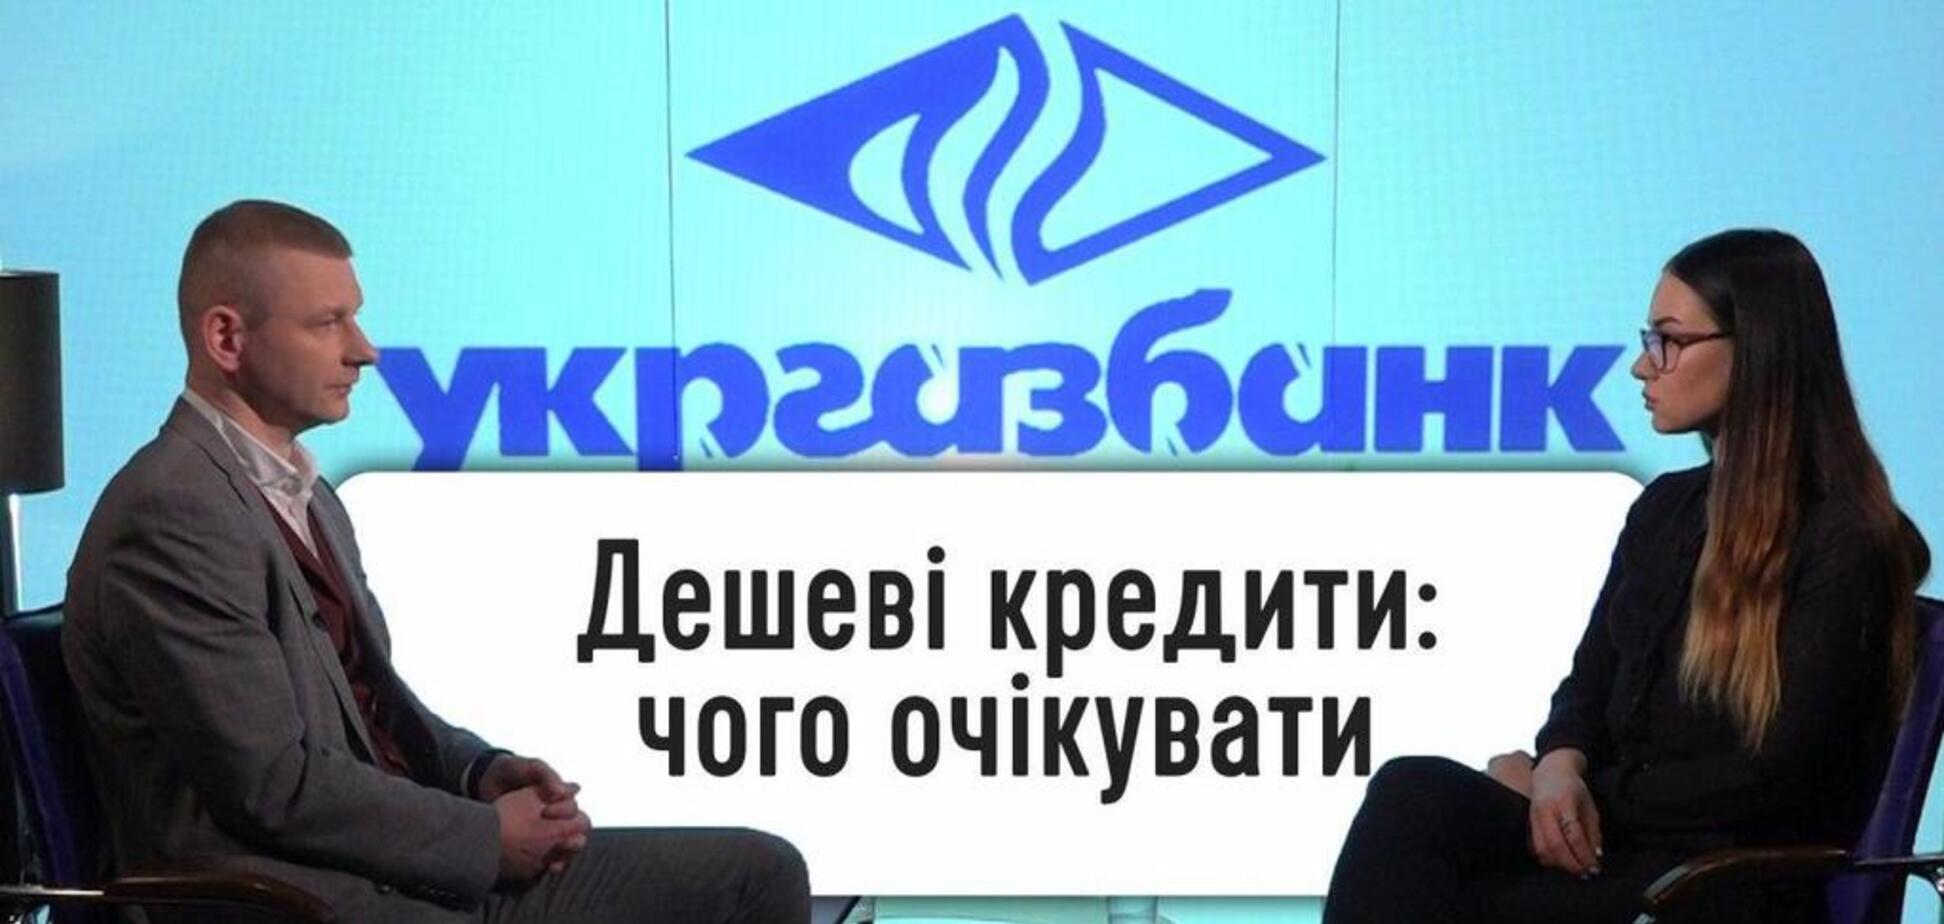 Какие деньги ждут украинский бизнес: банкир объясняет, как будут кредитовать в 2020 году